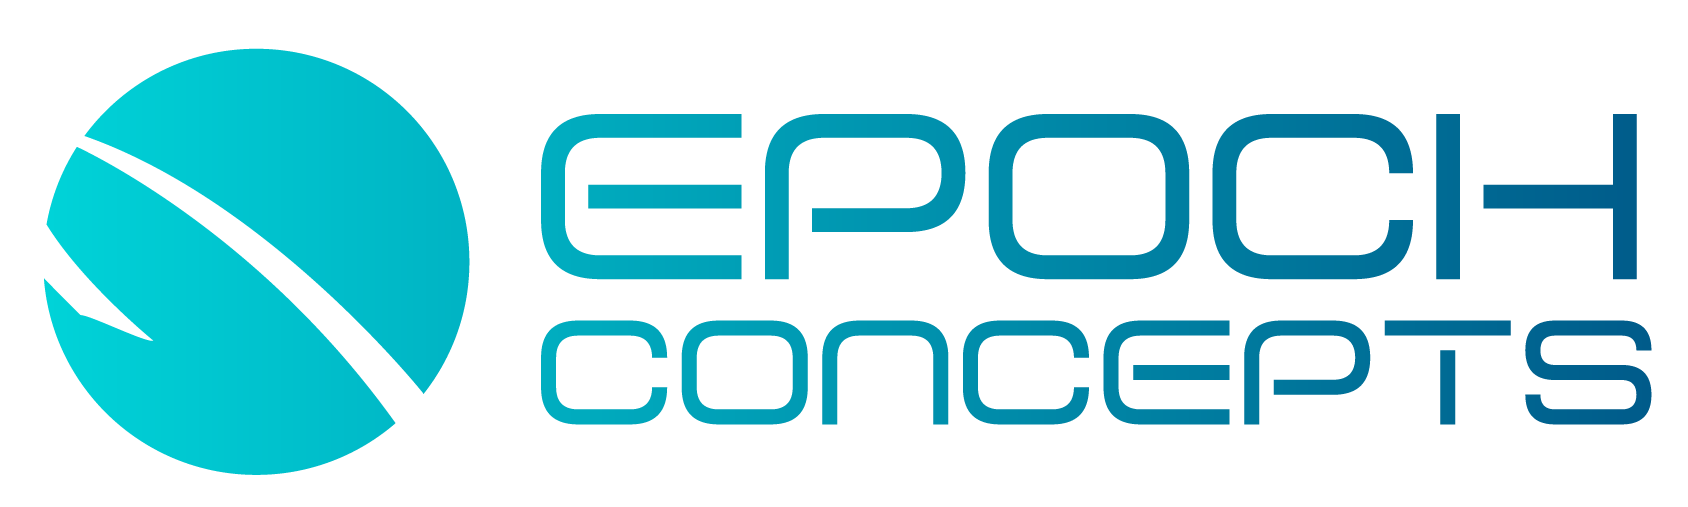 epoch logo